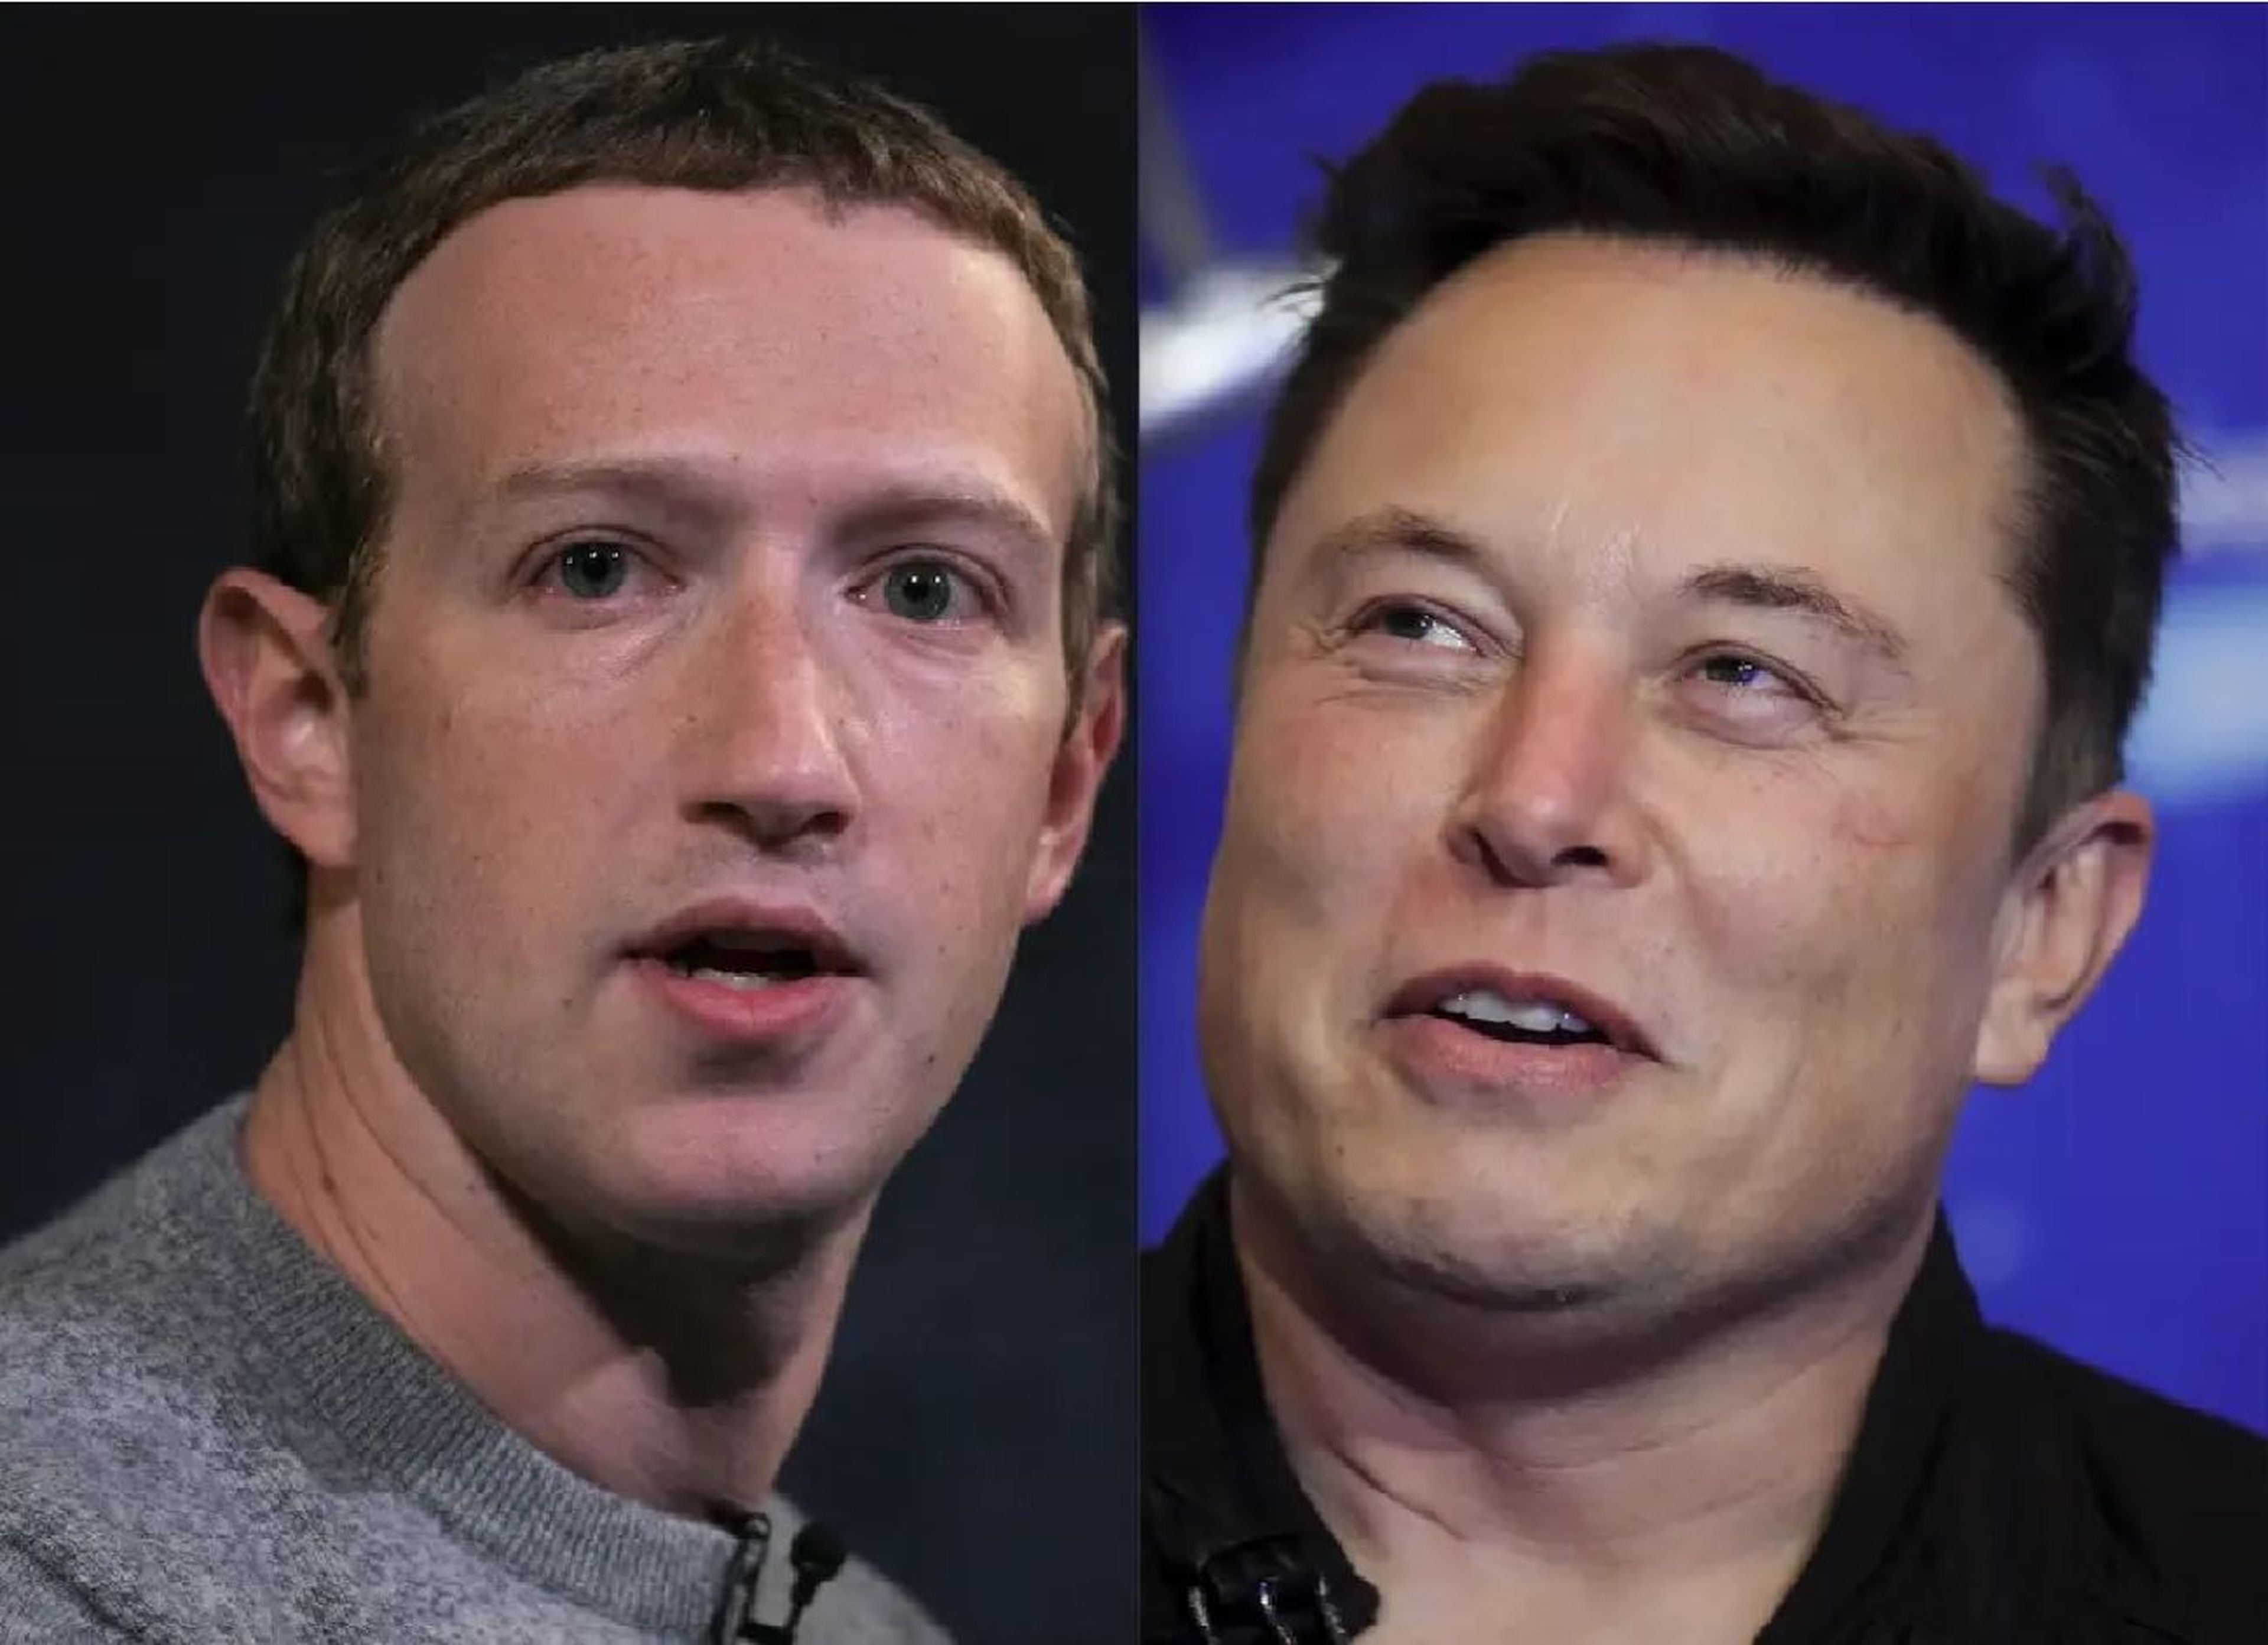 Mark Zuckerberg parece haber aceptado el reto de Elon Musk de luchar en una jaula.